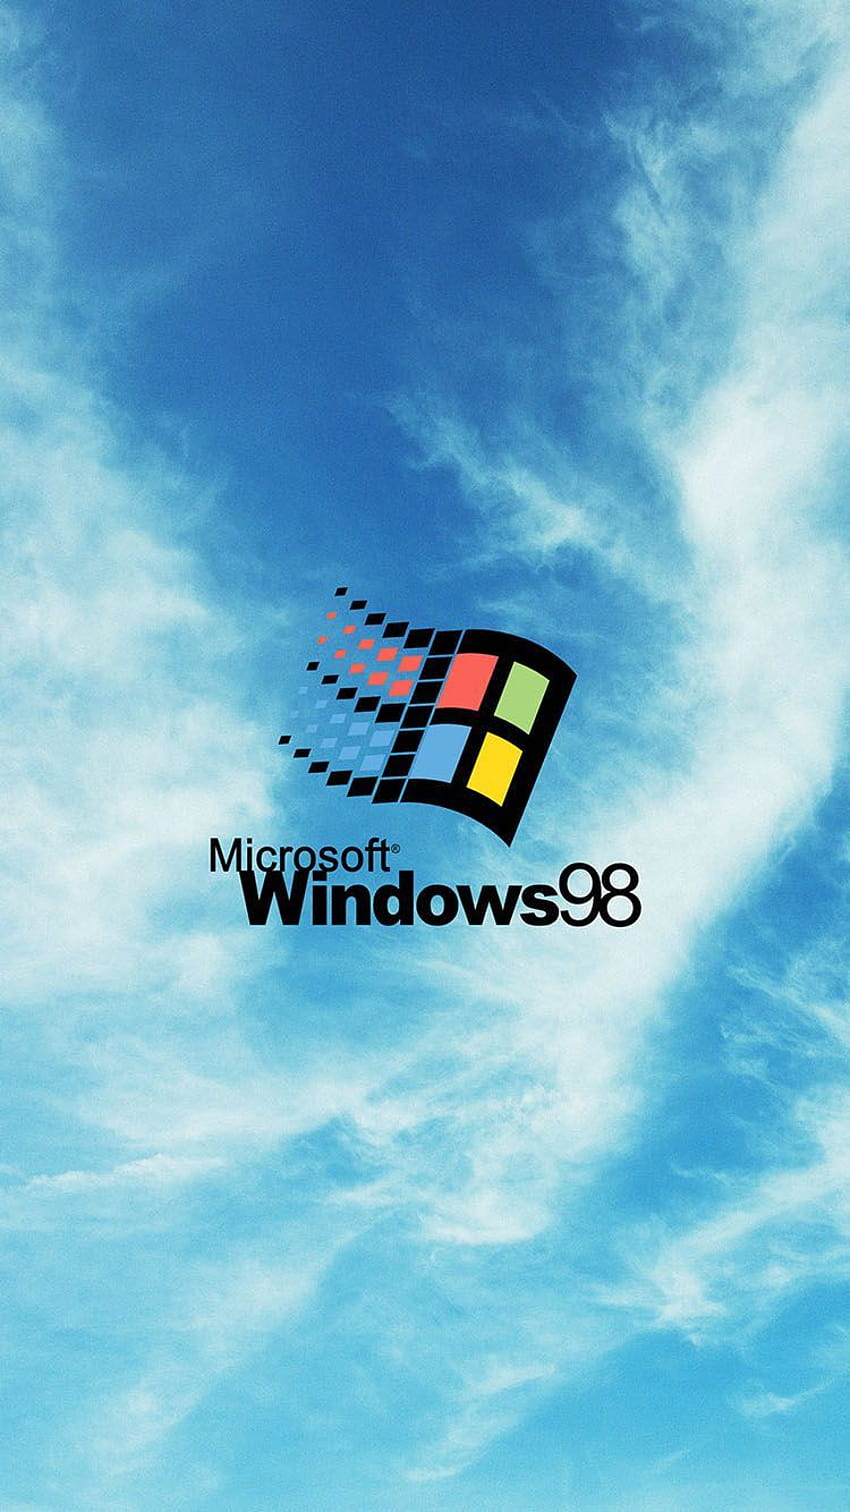 Với hình nền HD logo Windows 98, bạn sẽ trở lại với những tháng ngày đầu tiên sử dụng máy tính. Hình nền tràn đầy tuổi thơ và gợi nhớ những kỷ niệm xưa cùng chiếc máy tính đầu tiên của mình. Nhanh tay đặt hình nền này để trở về tuổi thơ với chiếc máy tính đầu tiên.